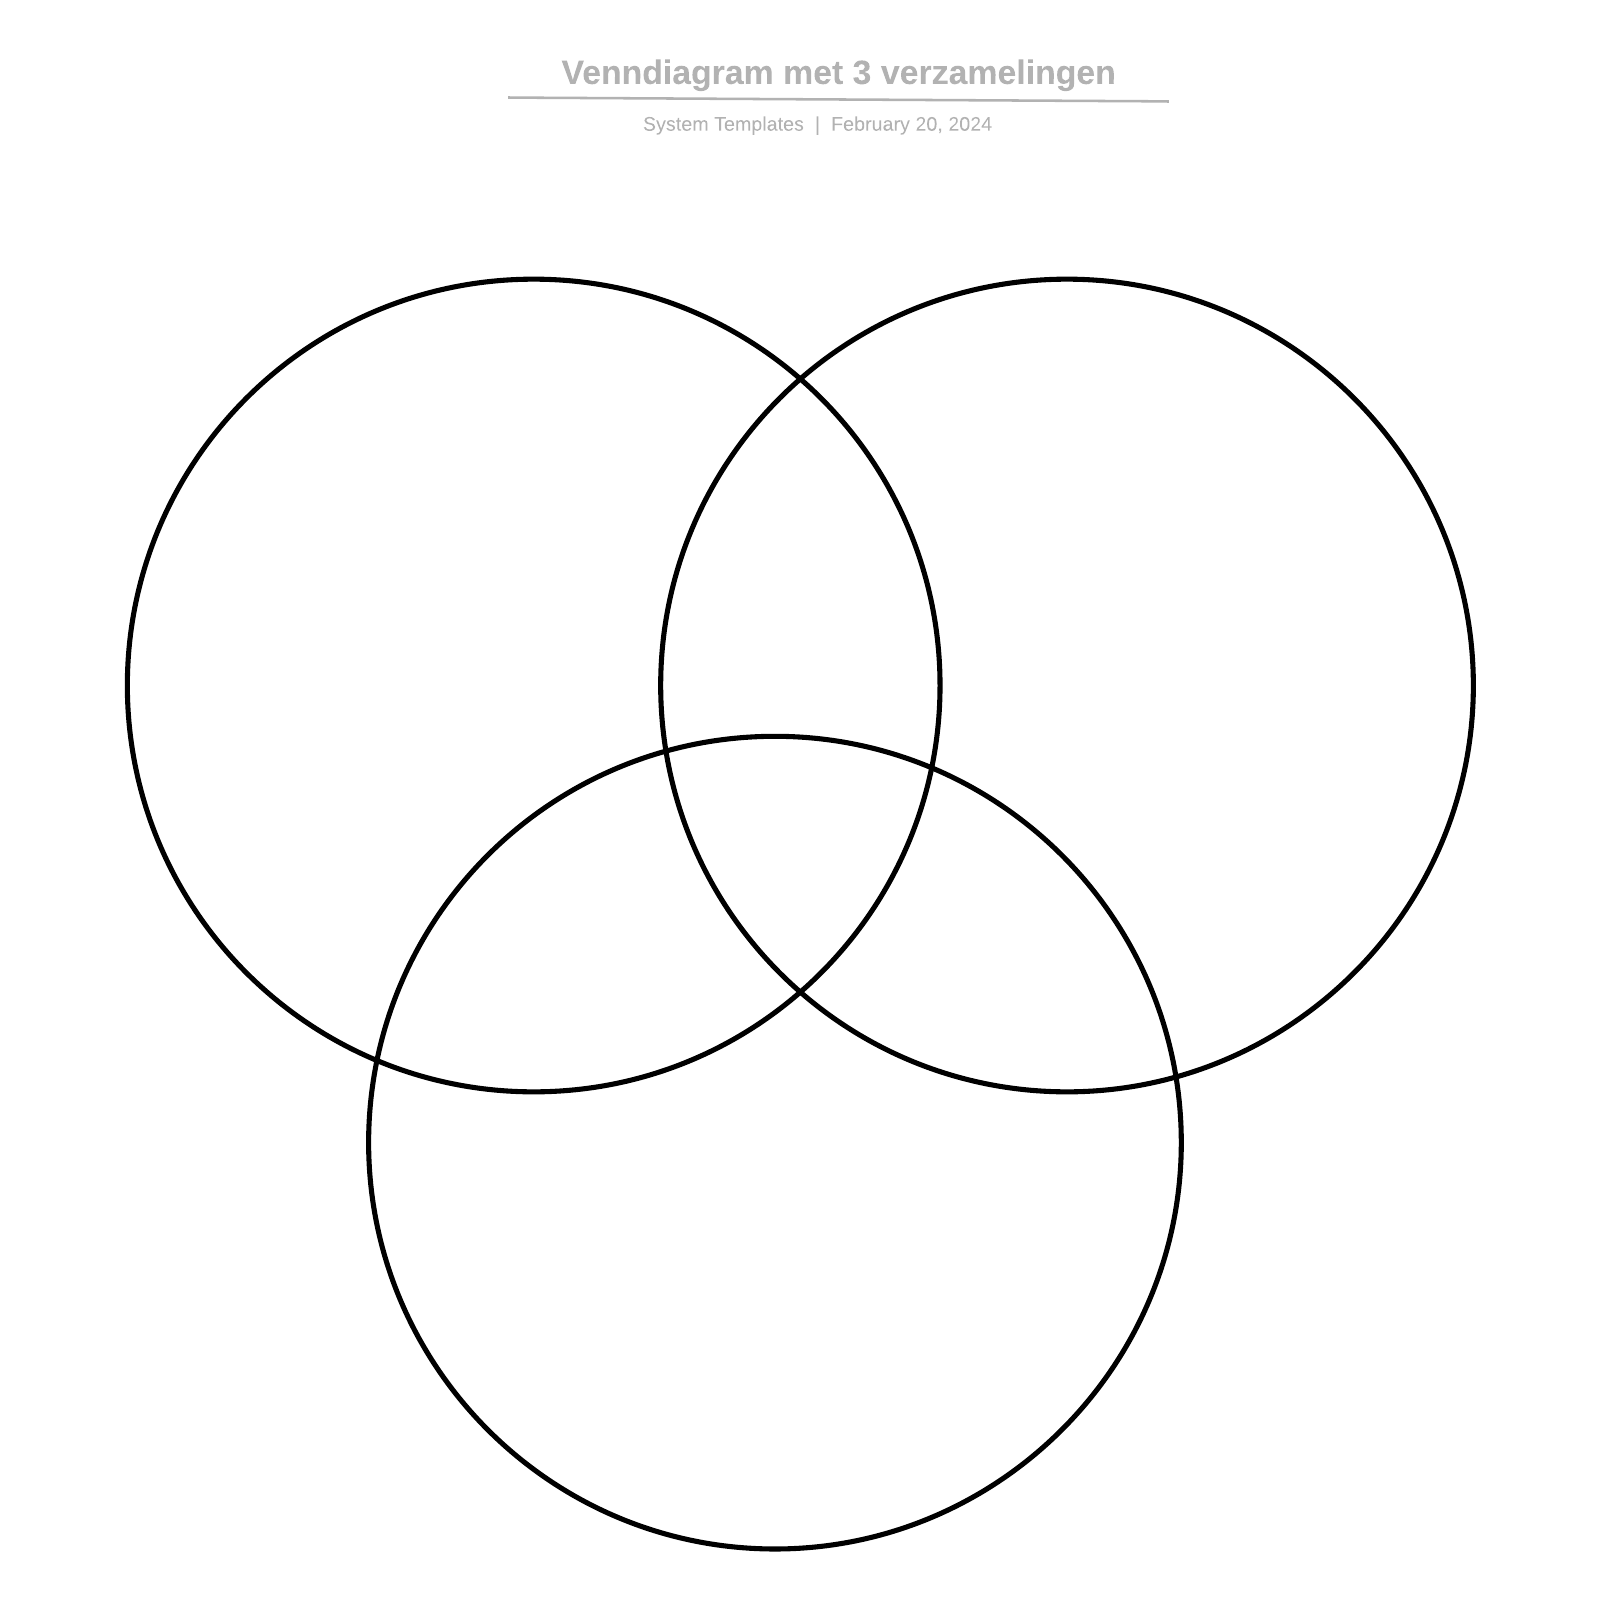 Venndiagram met 3 verzamelingen example